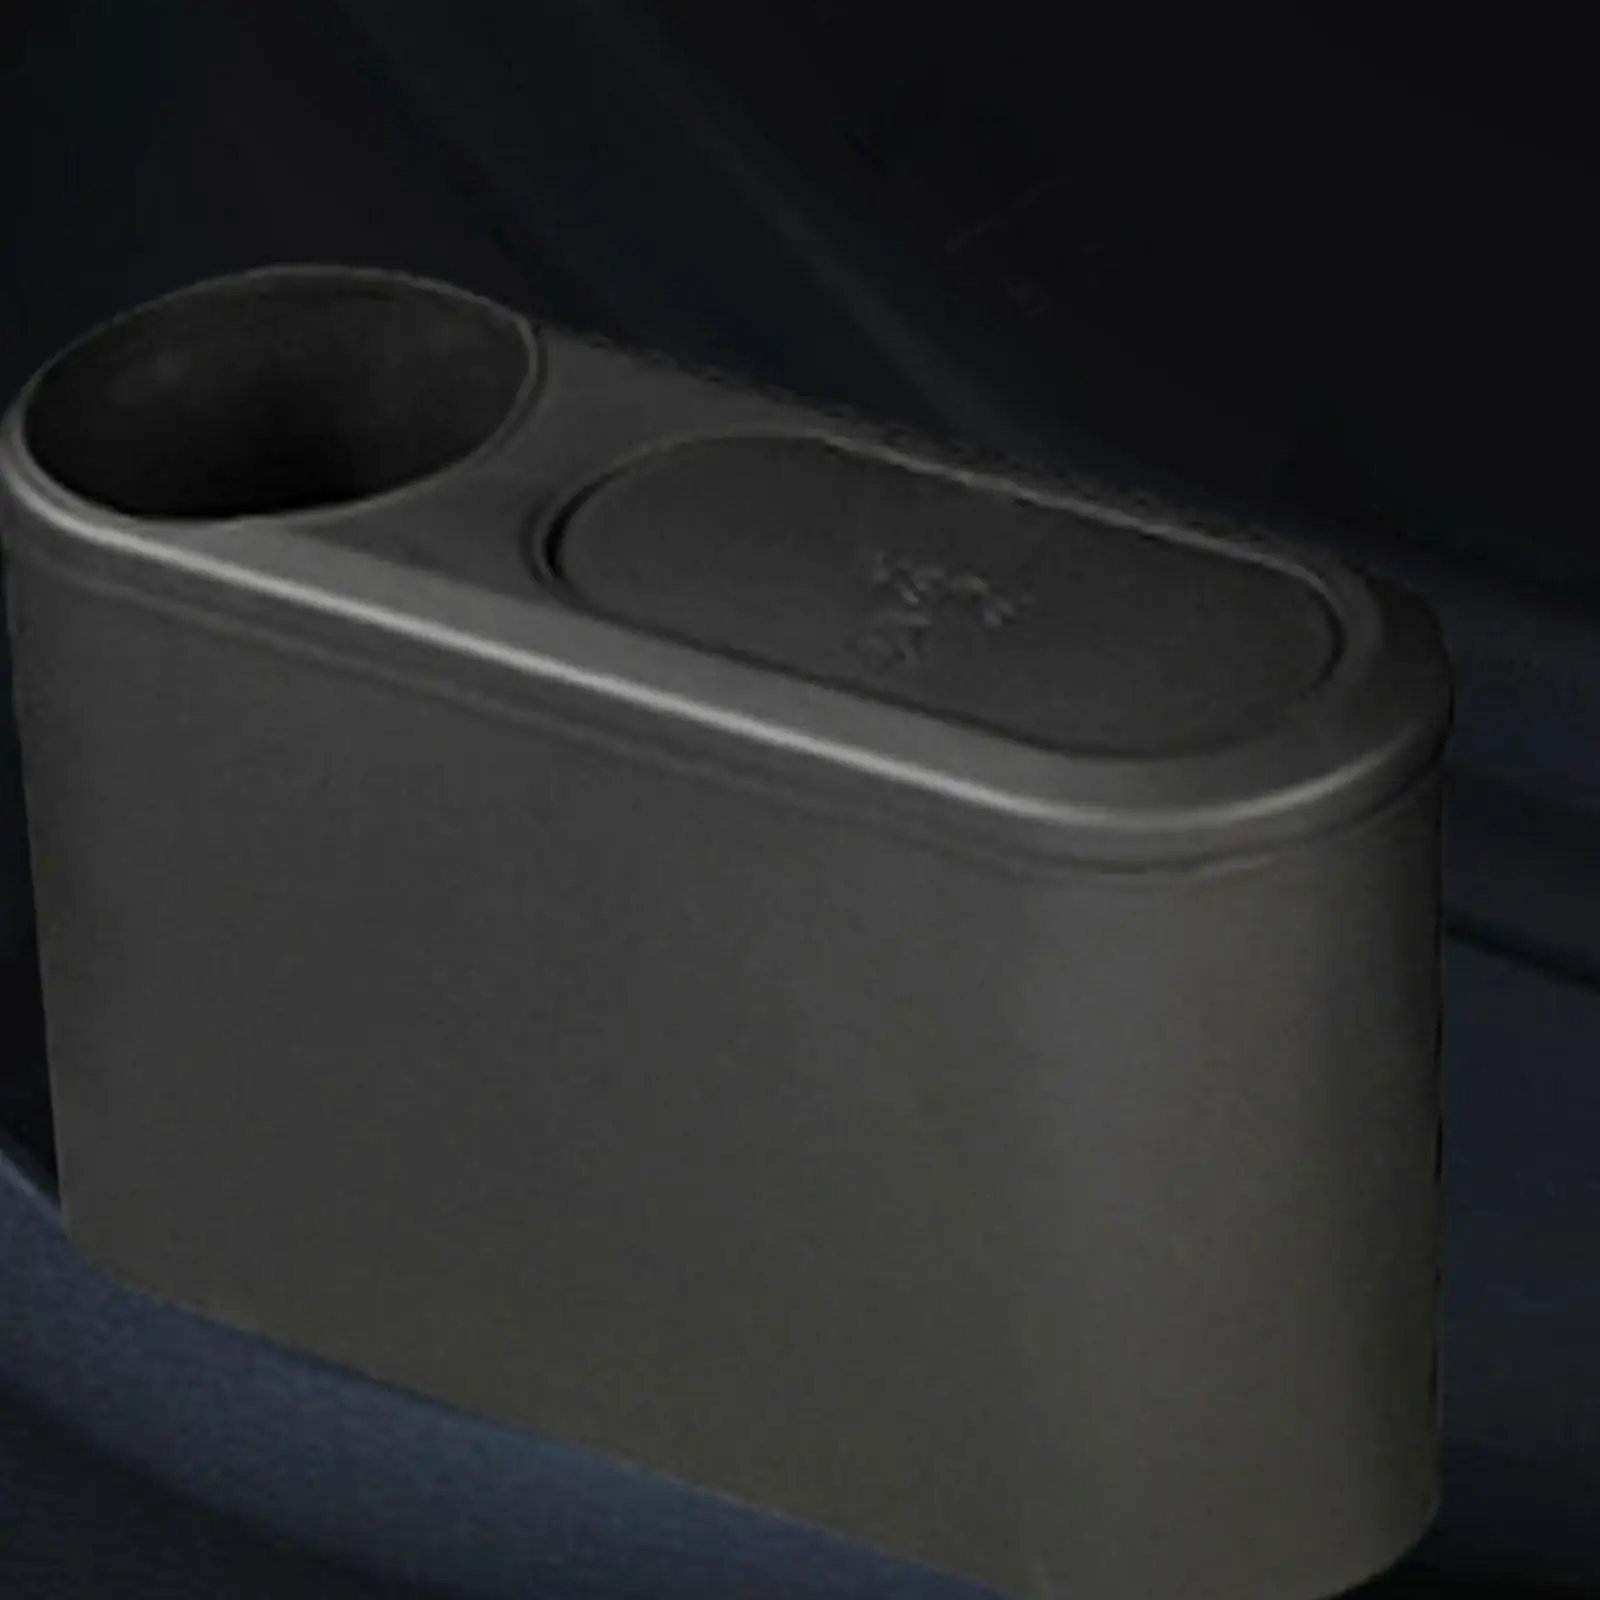 Car Trash Can Trash Container Multipurpose Auto Interior Accessories Garbage Bin Small Car Trash Bin for Umbrella Phone